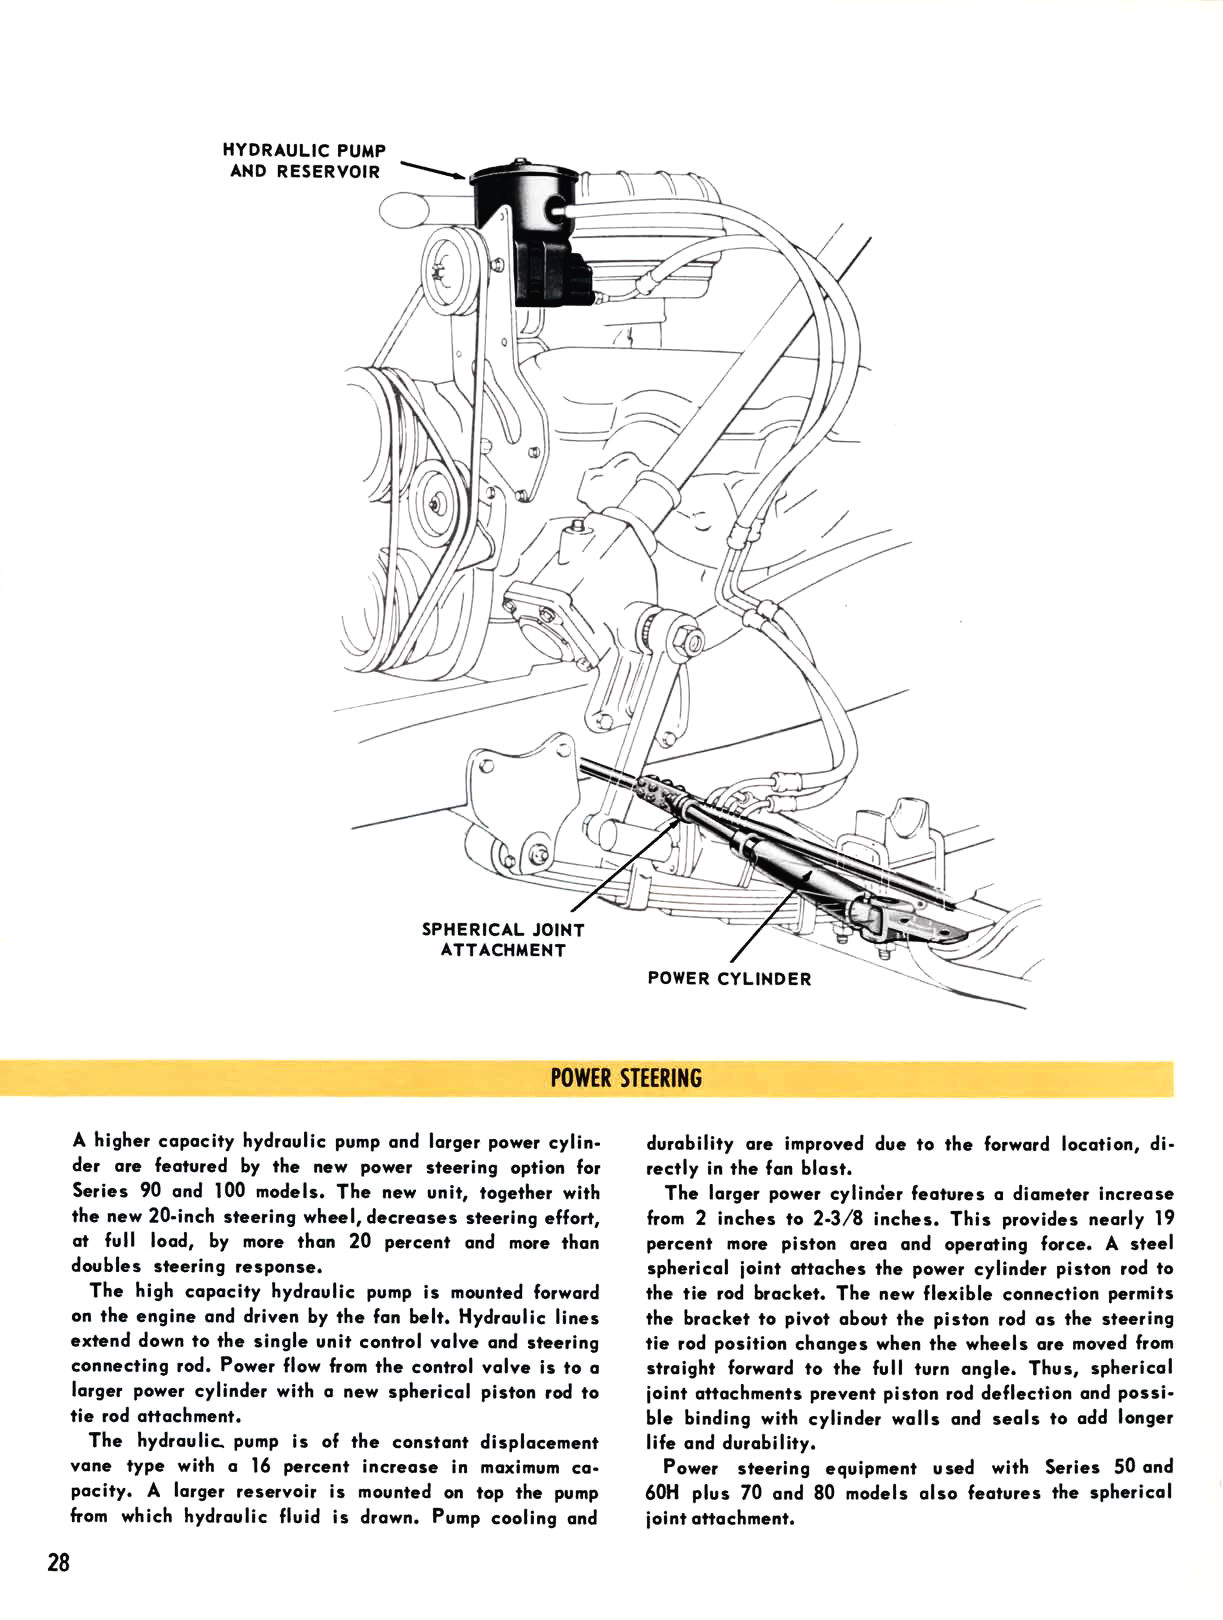 1958_Chevrolet_Truck_Engineering_Features-28